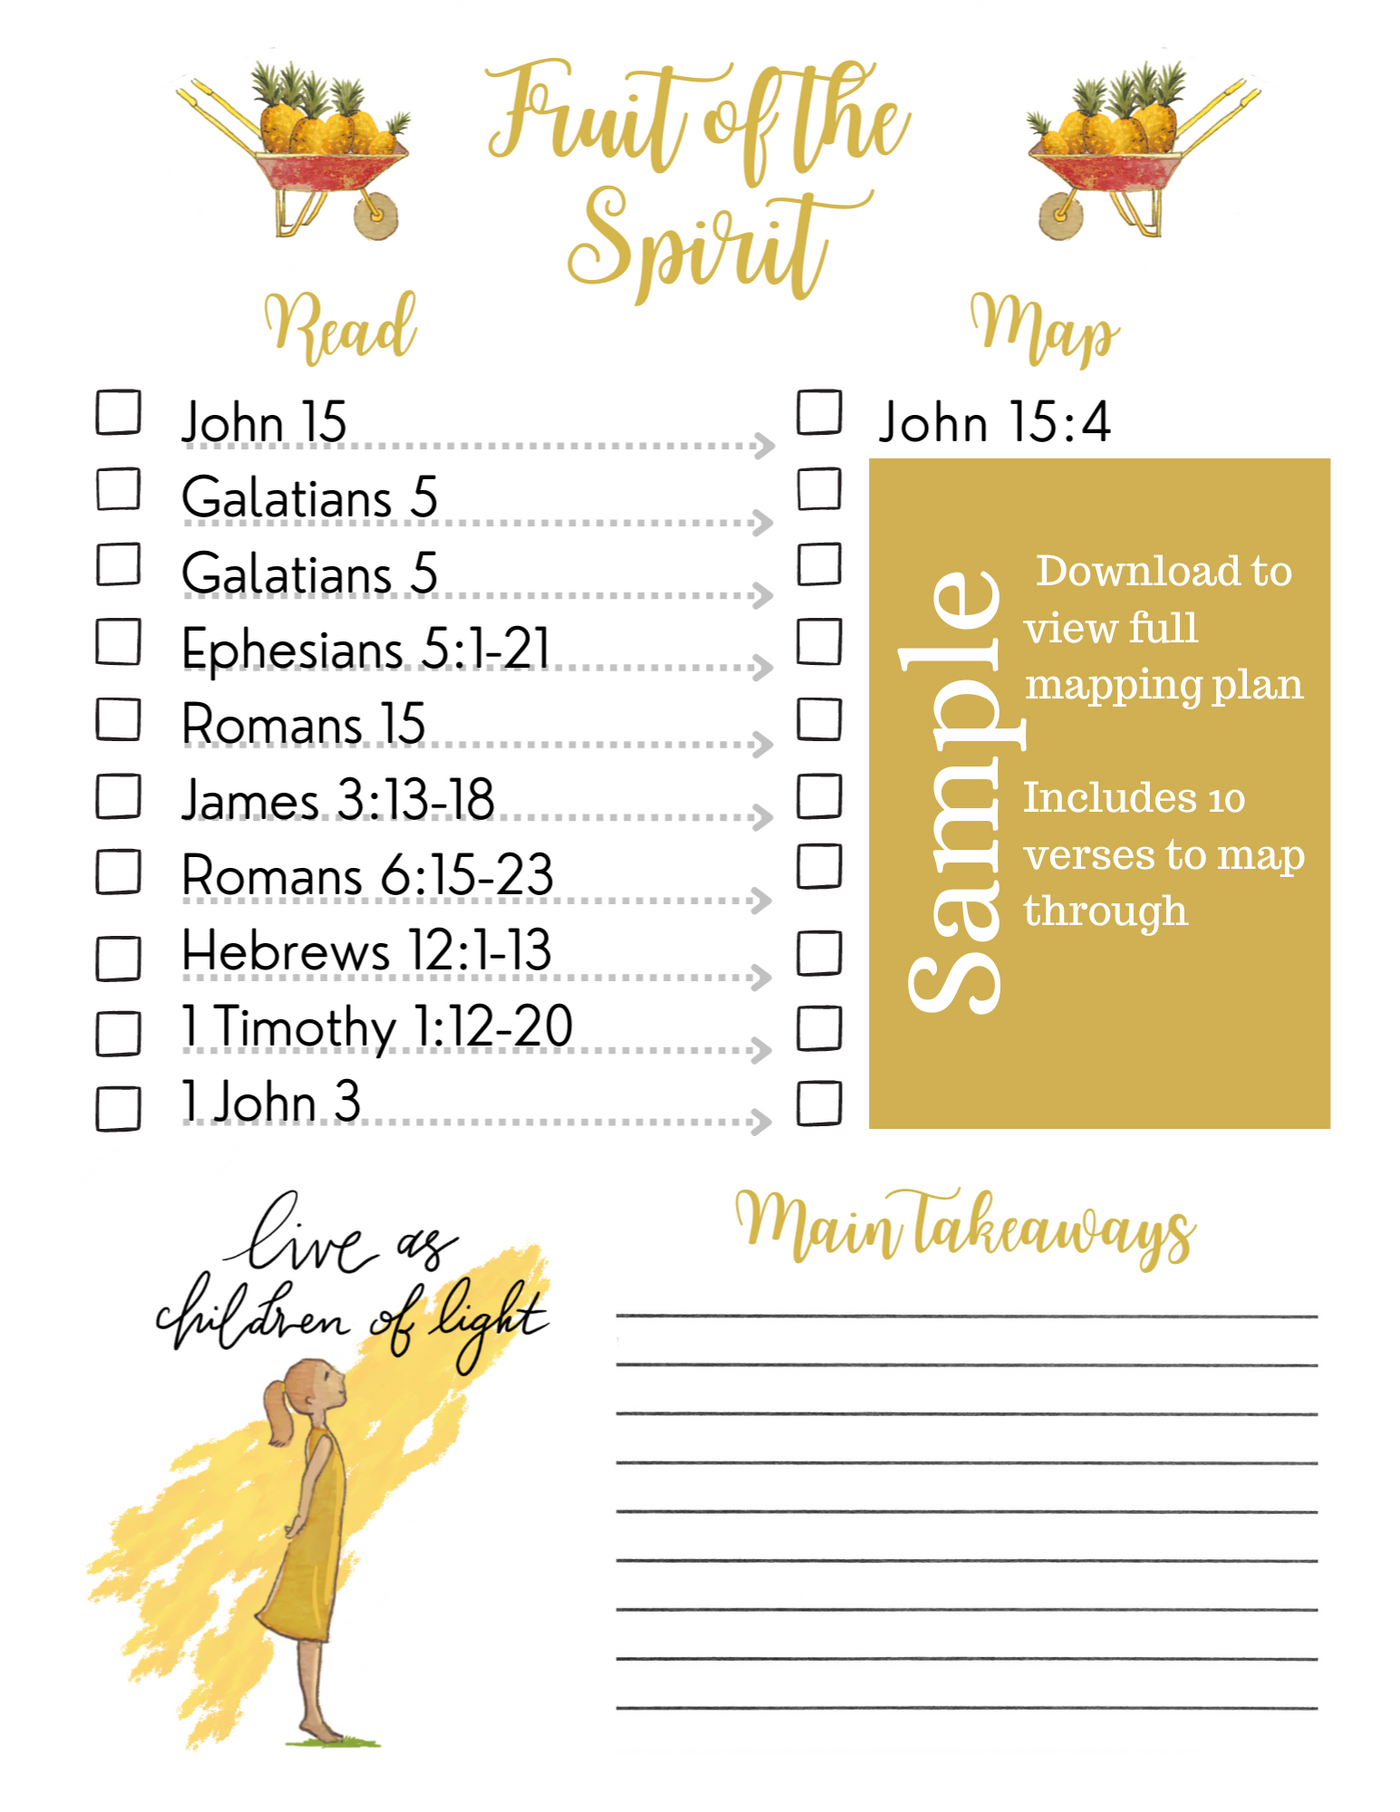 'Fruit of the Spirit' Verse Mapping Plan